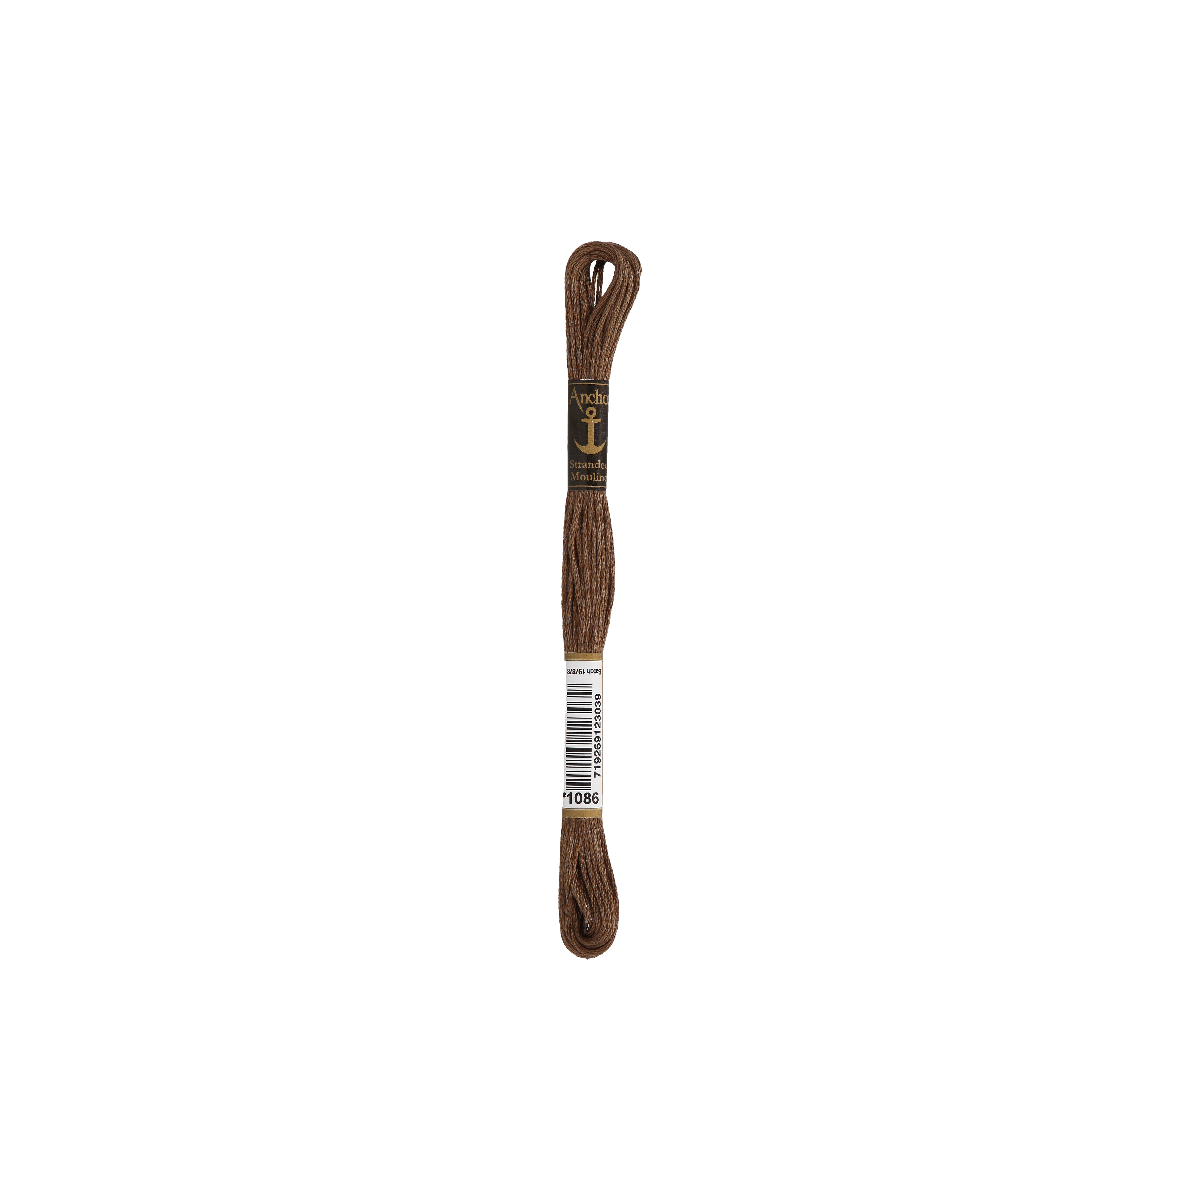 Anchor Torsade de 8m, brun moyen, coton, couleur 1086, 6...